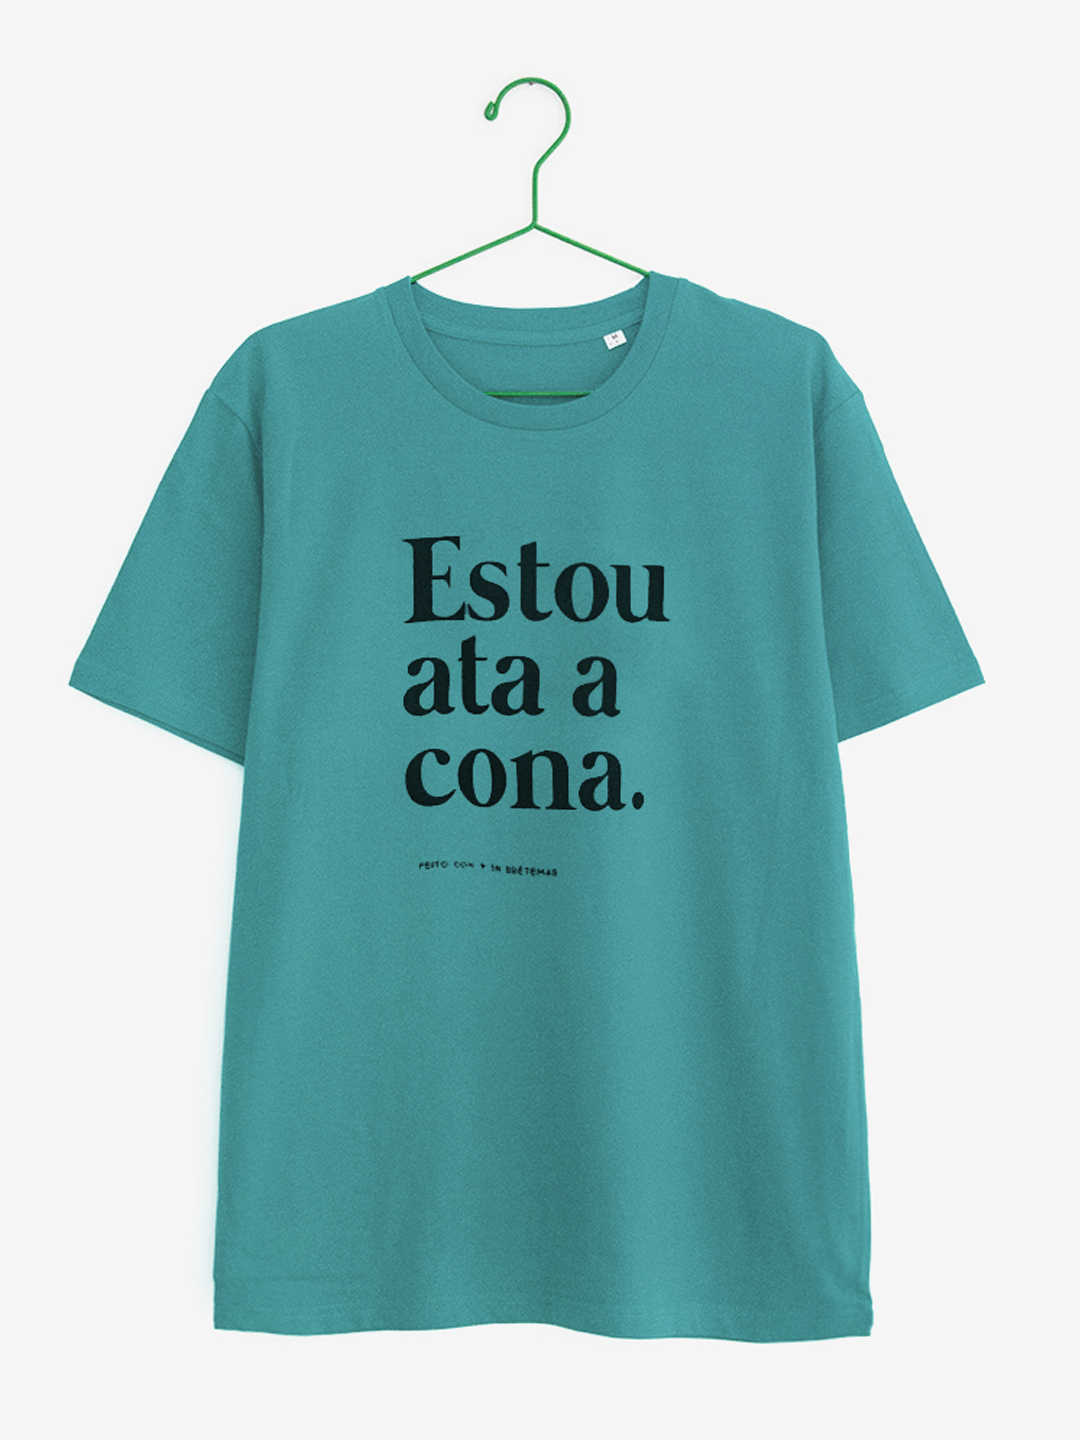 Camiseta turquesa "Estou ata a cona" Brétemas